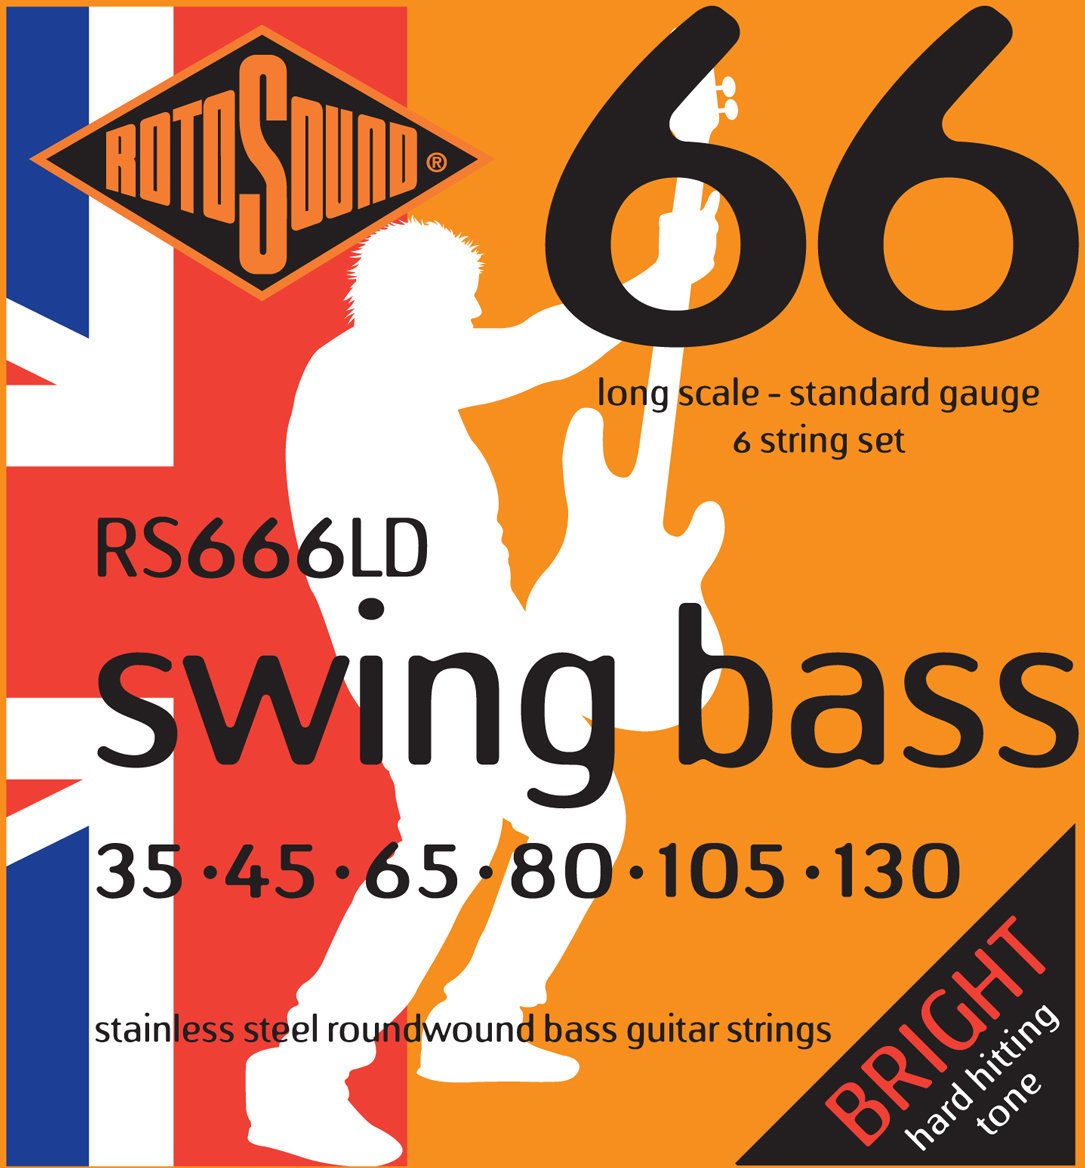 Struny pre 6-strunovú basgitaru Rotosound RS 666 LD